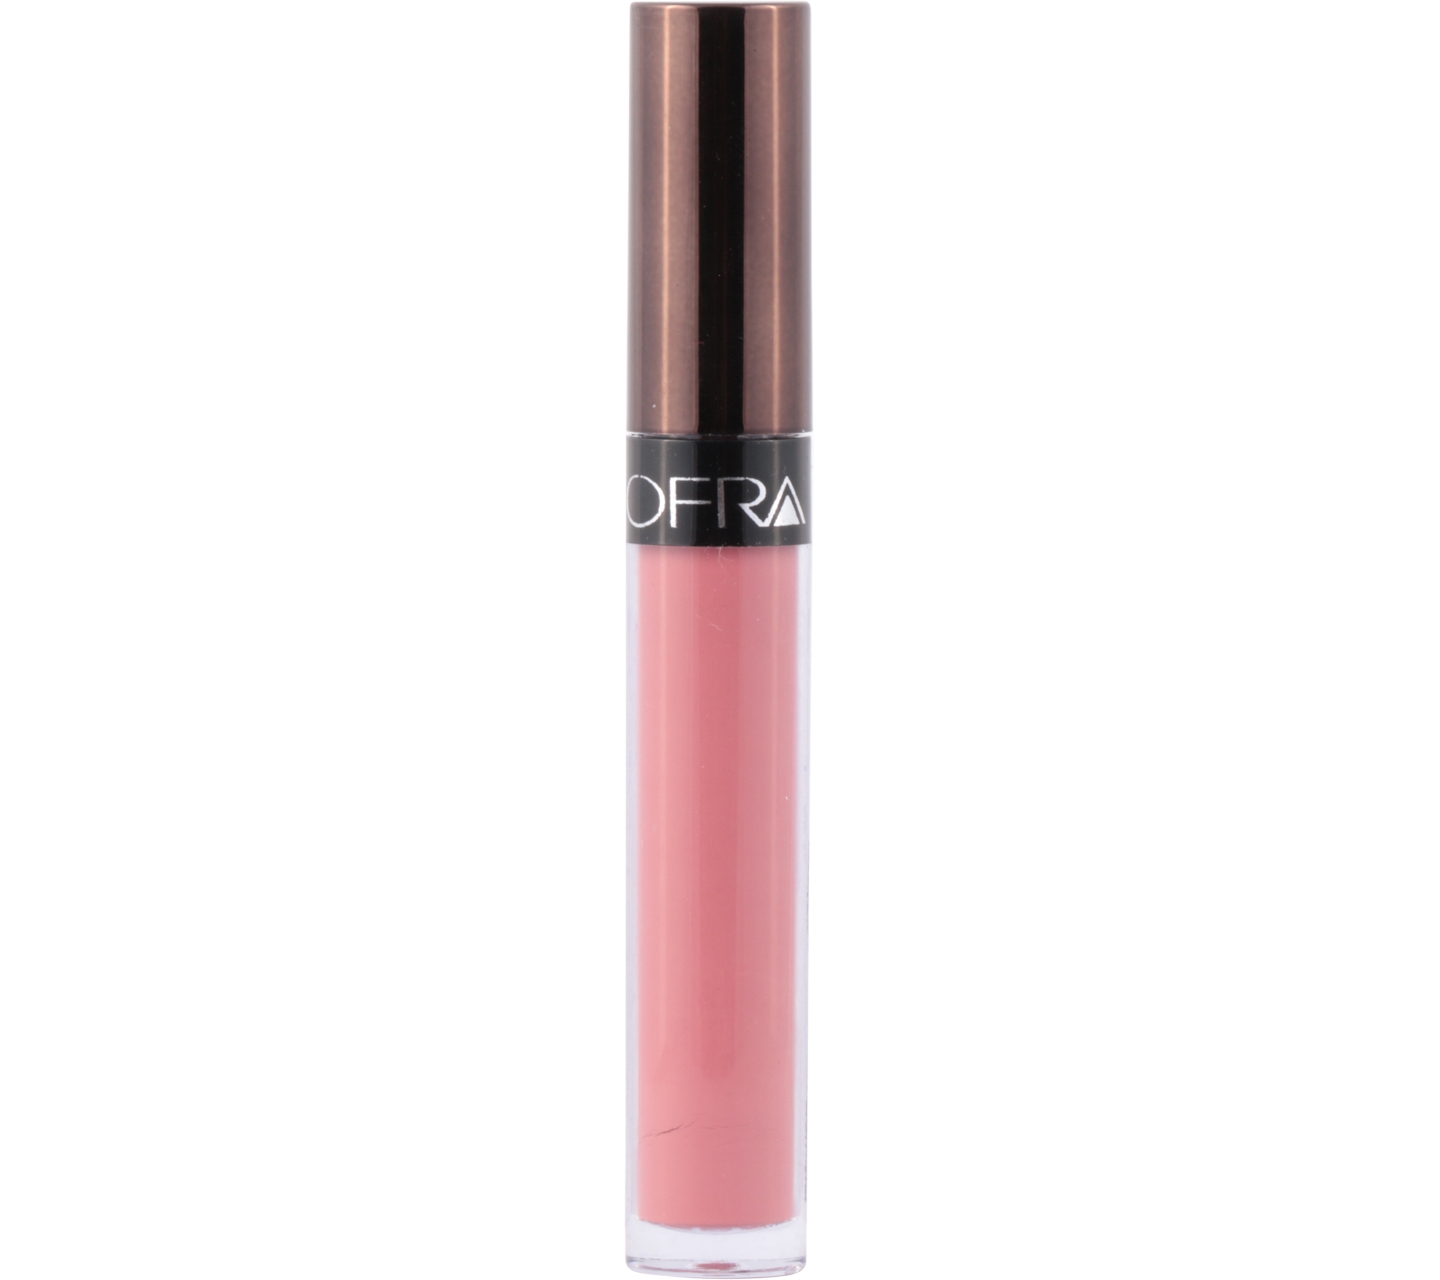 OFRA Long Lasting Liquid Lipstick Charmed Lips